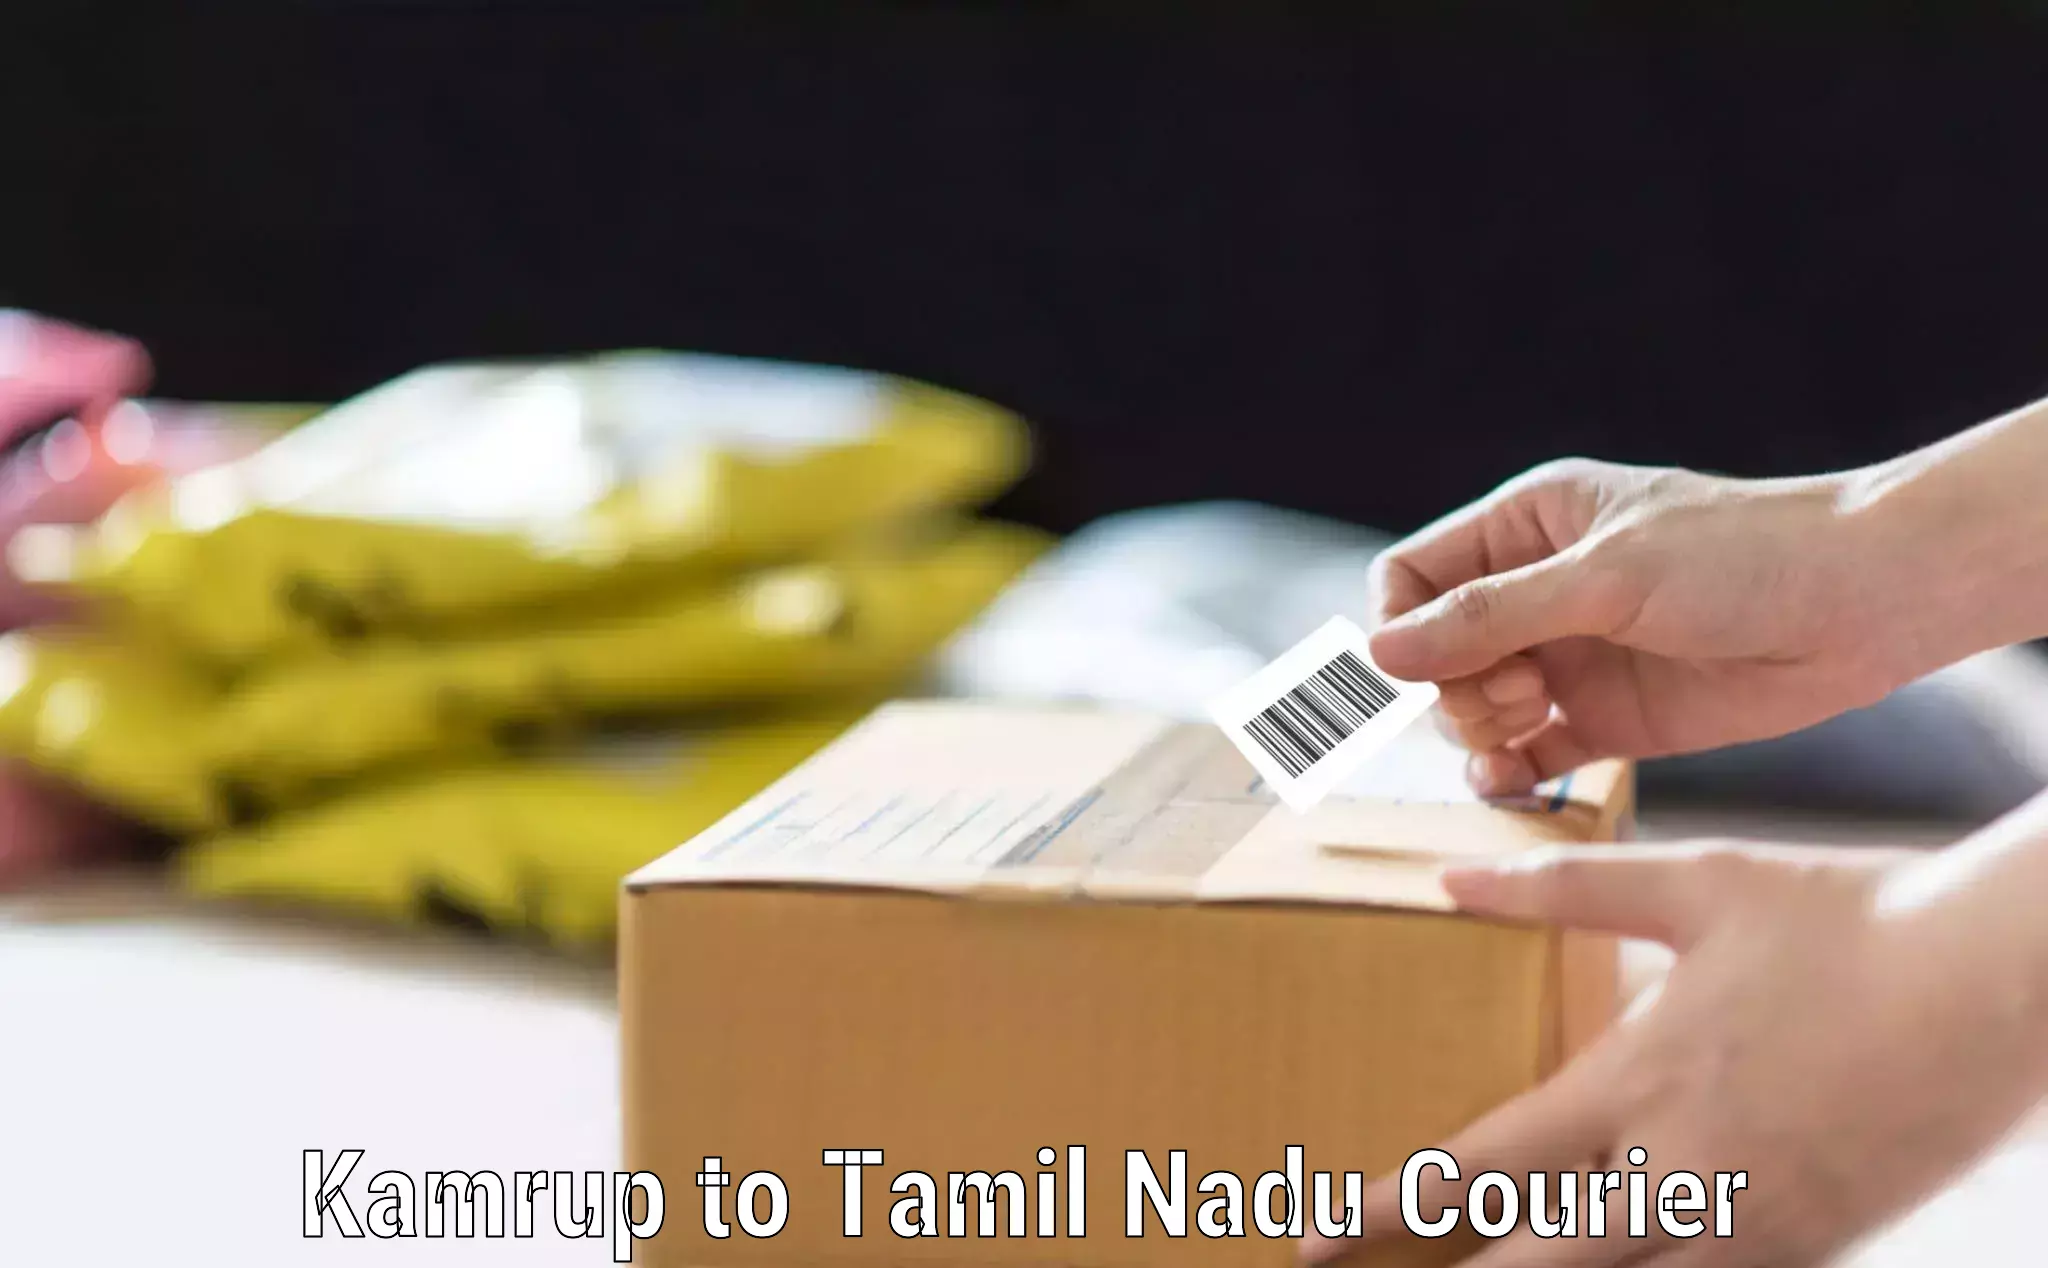 Baggage shipping experts Kamrup to Tamil Nadu